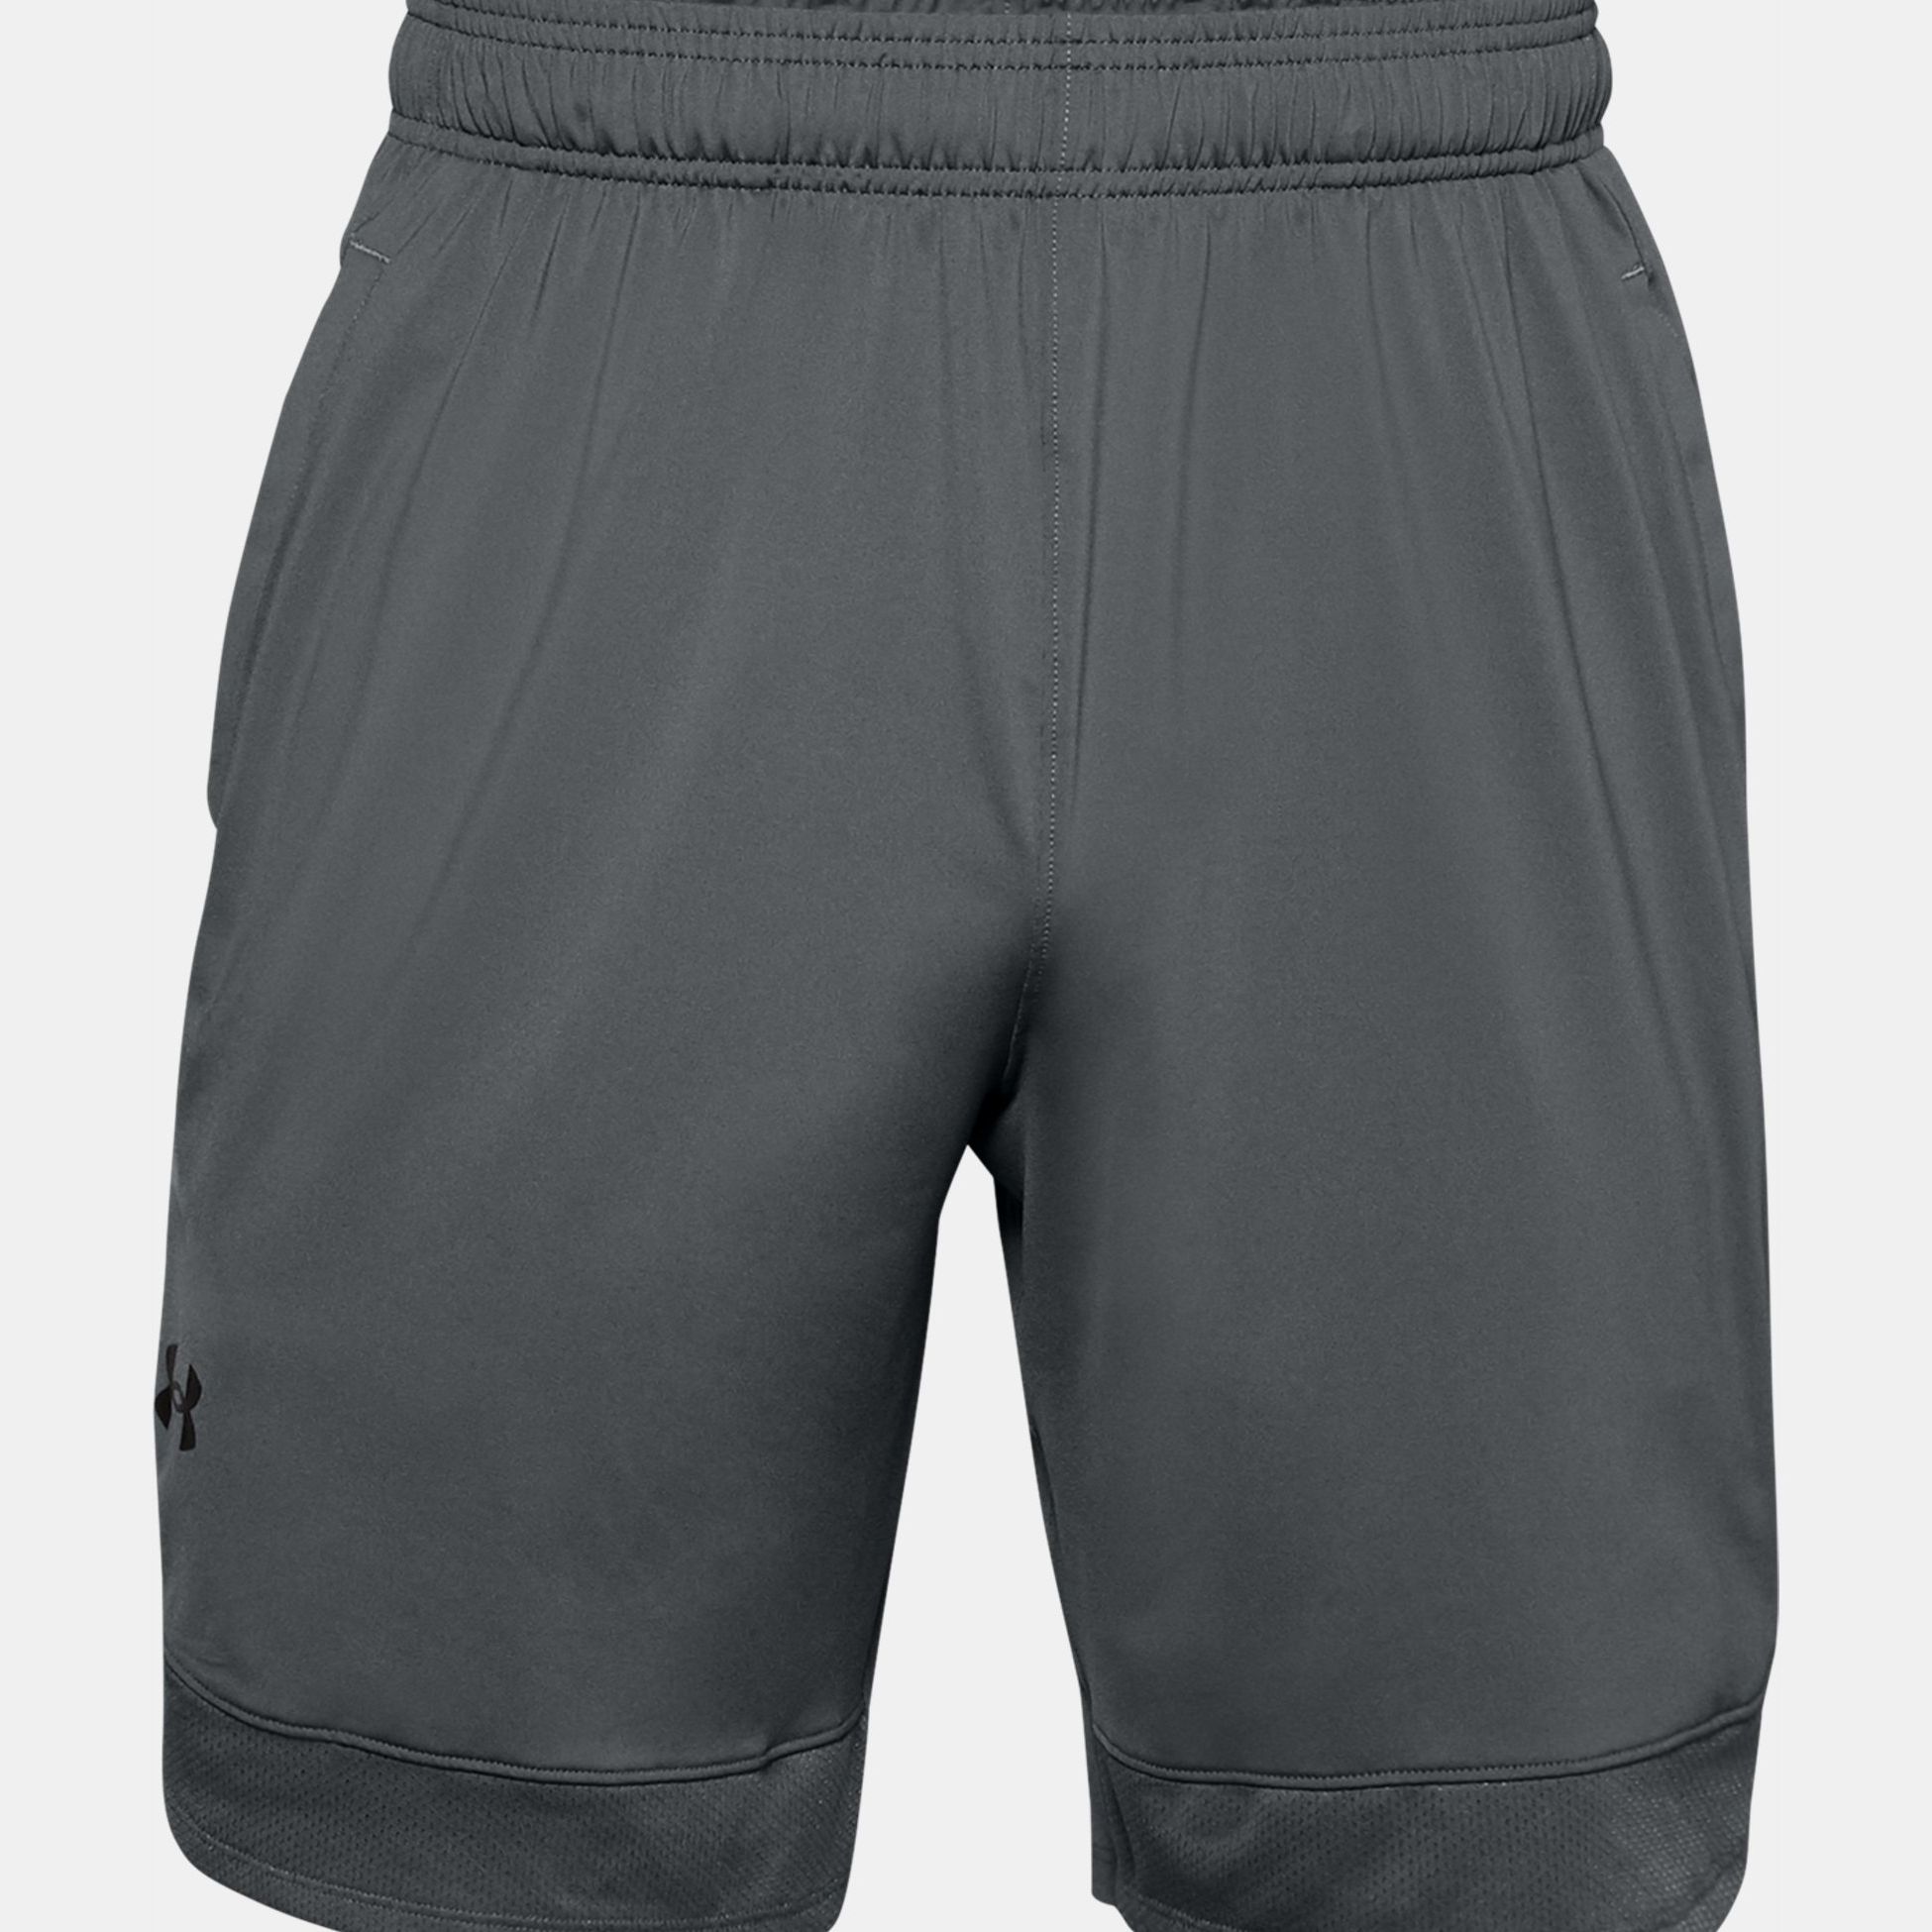 Shorts -  under armour UA Training Stretch Shorts